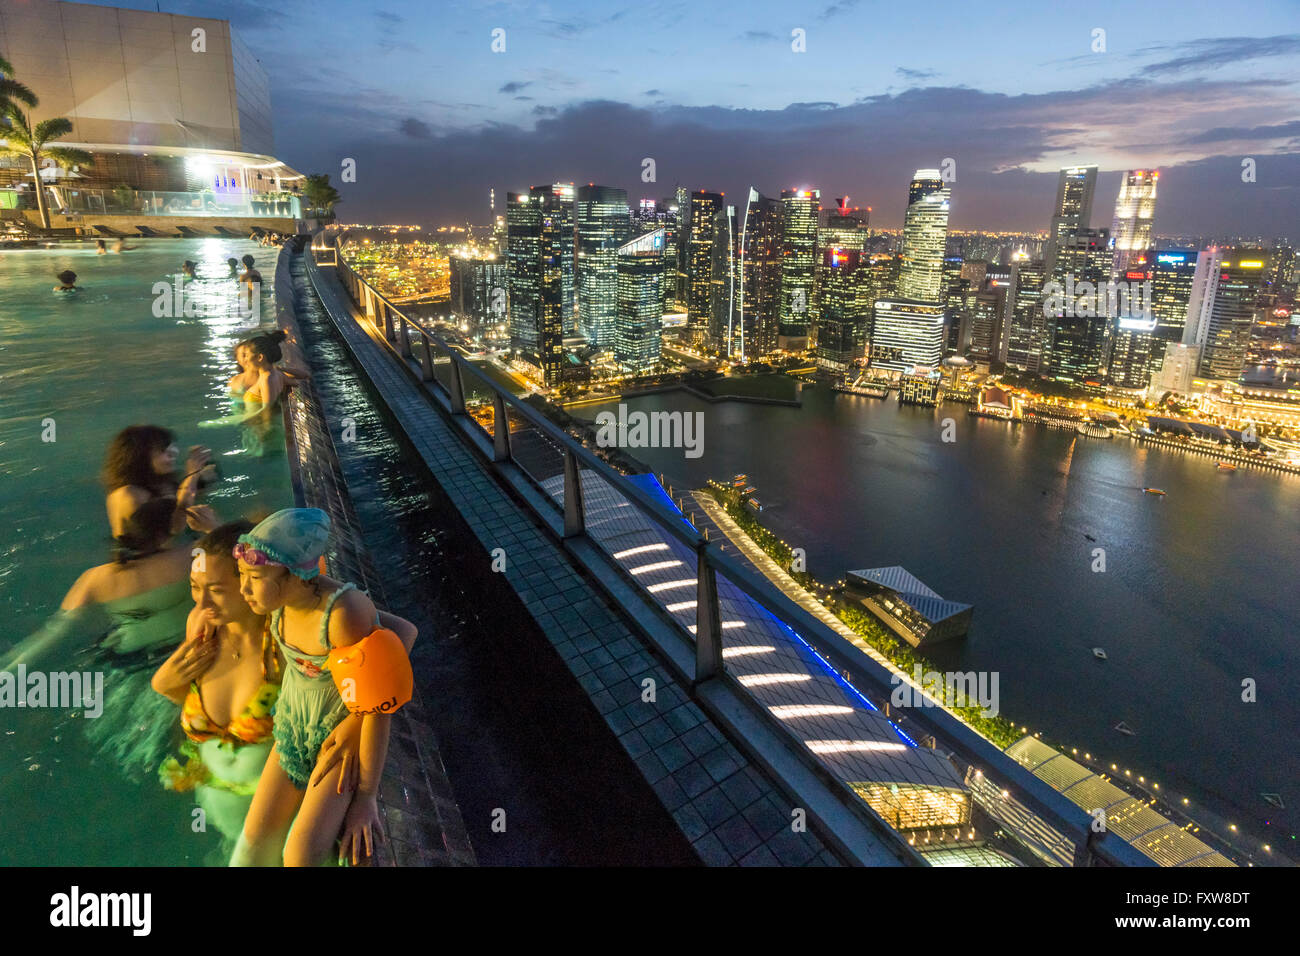 Marina Bay Sands , piscine à débordement, terrasse de toit, Skyline, Marina Bay, Singapour, Singapour, Asie Southest44 travelstock Banque D'Images